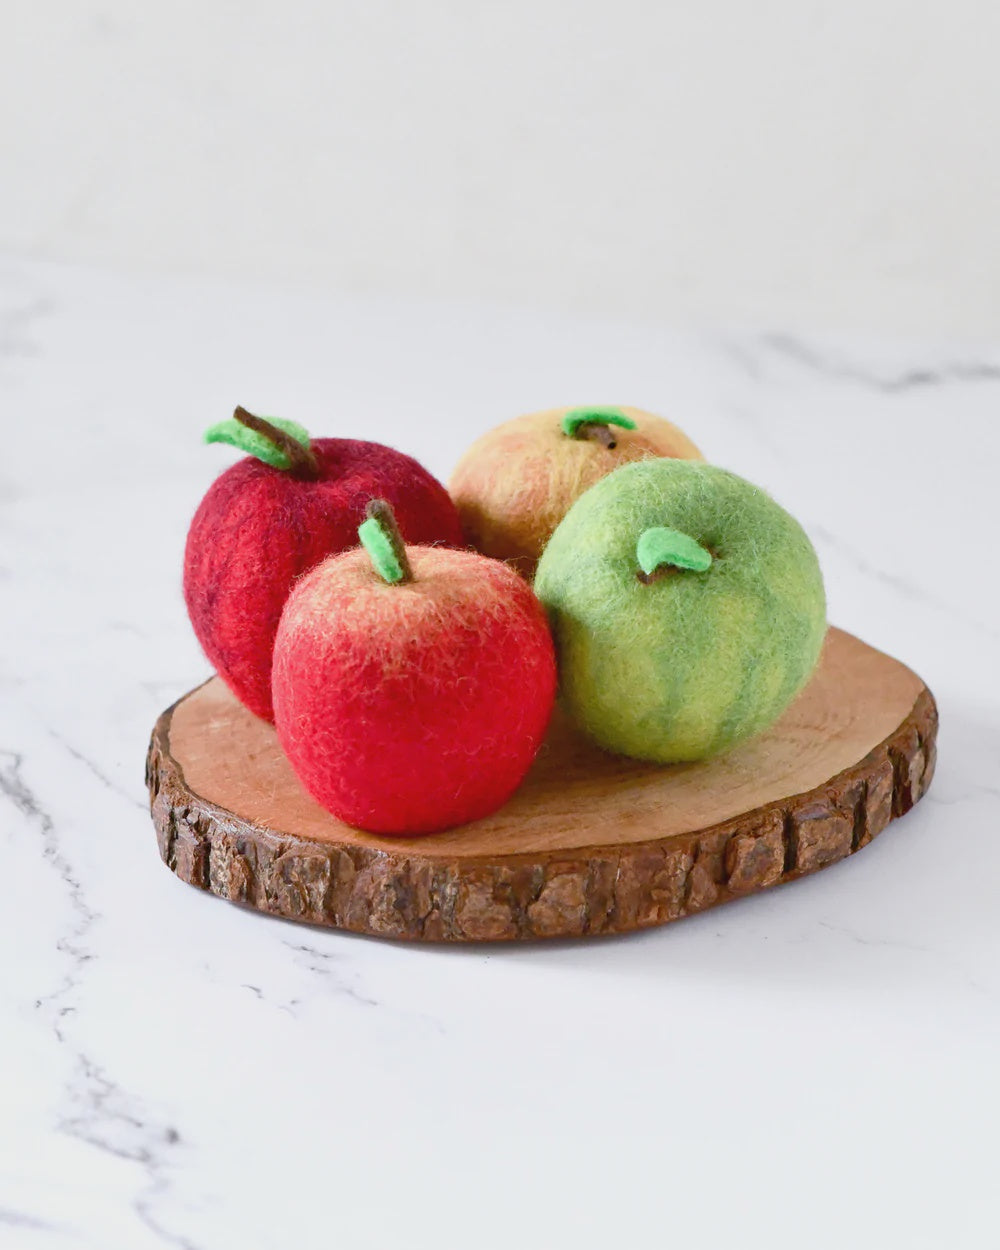 Felt Fruit & Vegetables - Apple